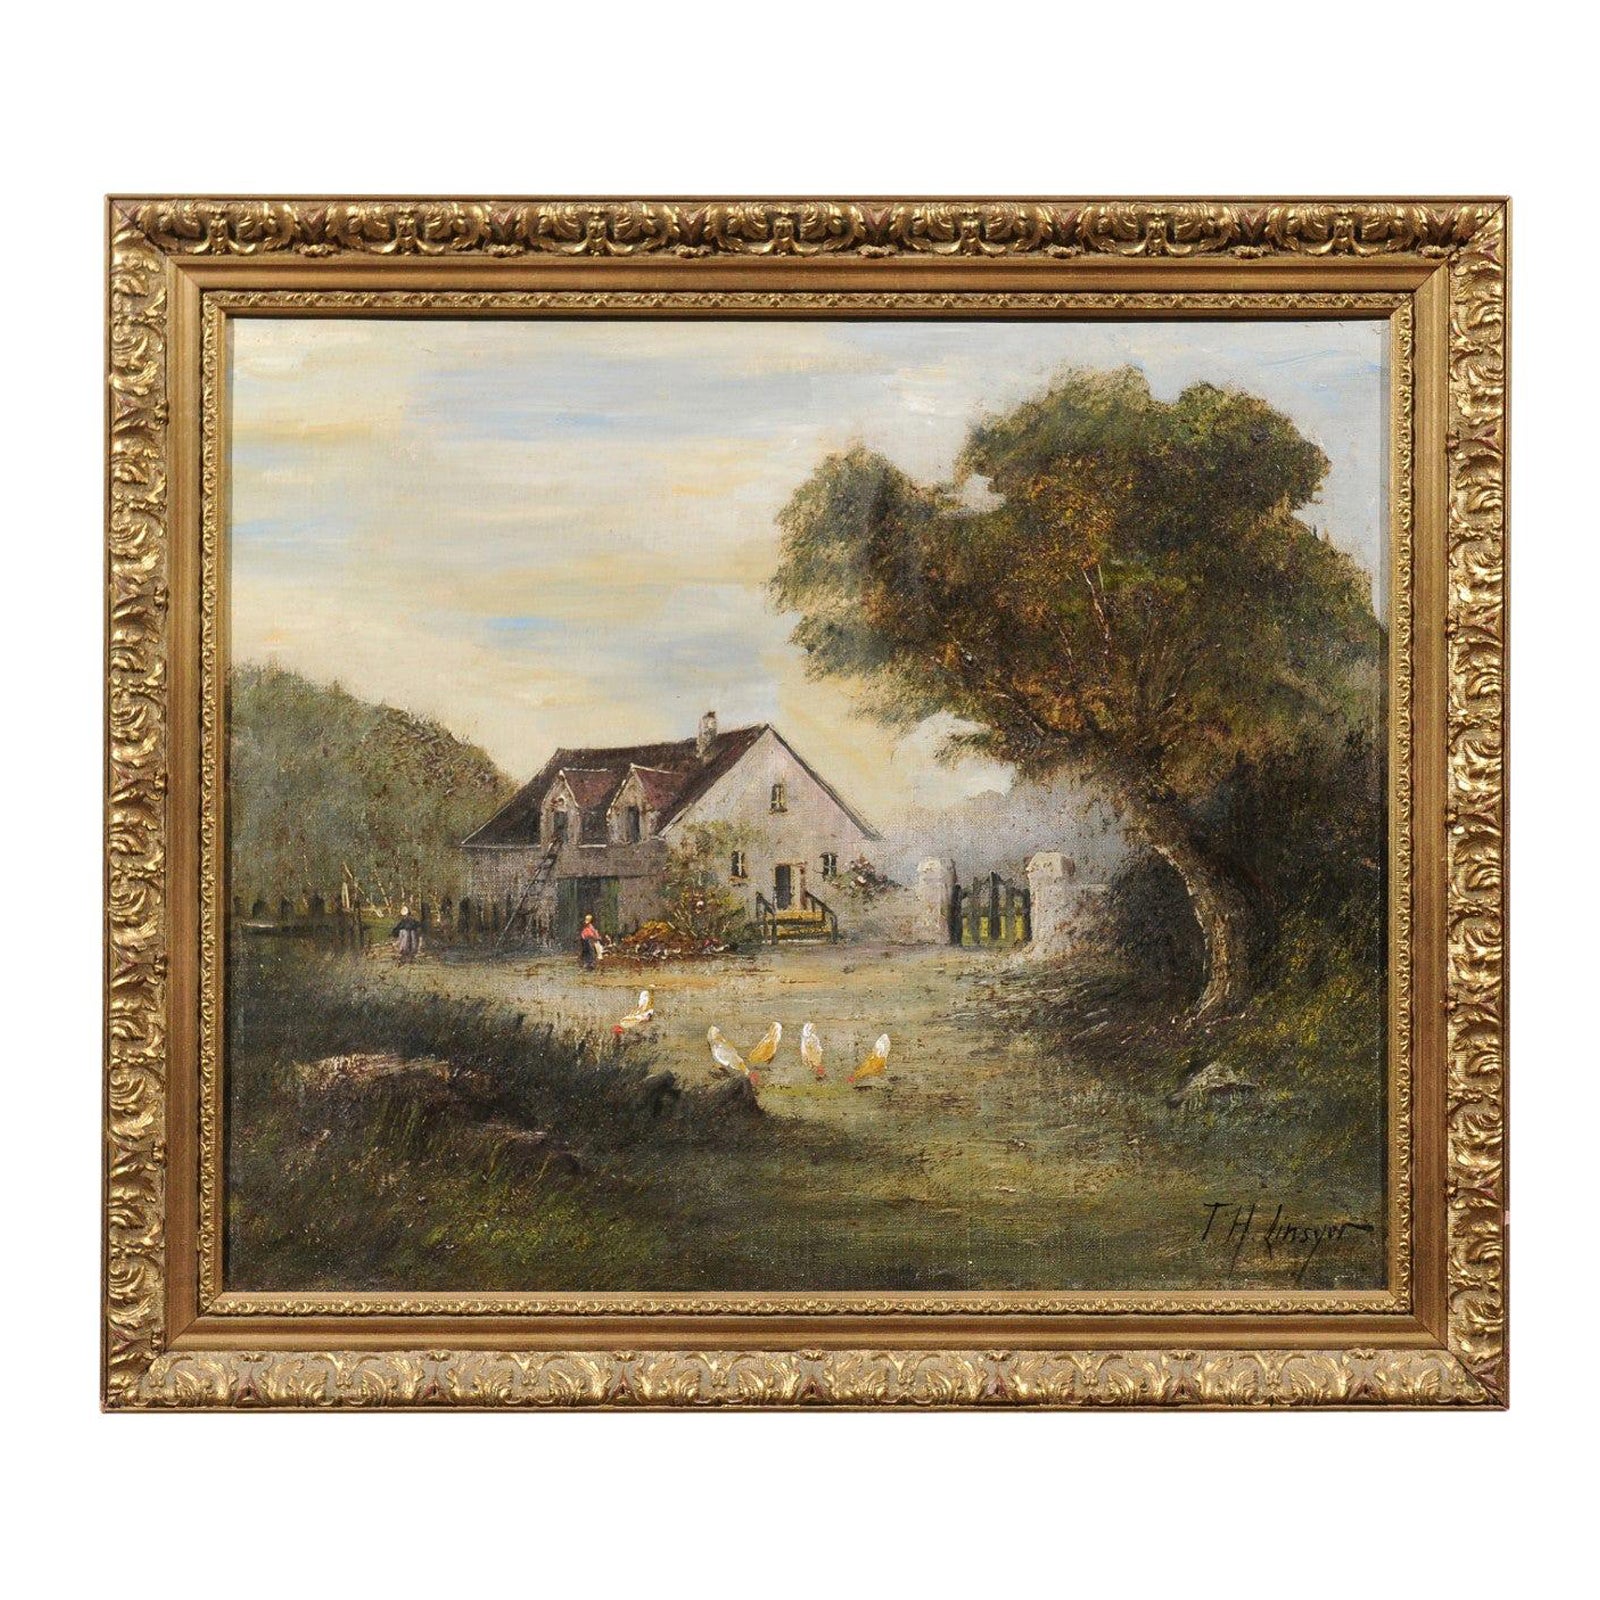 Huile sur toile encadrée de l'école française de Barbizon, peinture pastorale, signée Th. Linsyer en vente